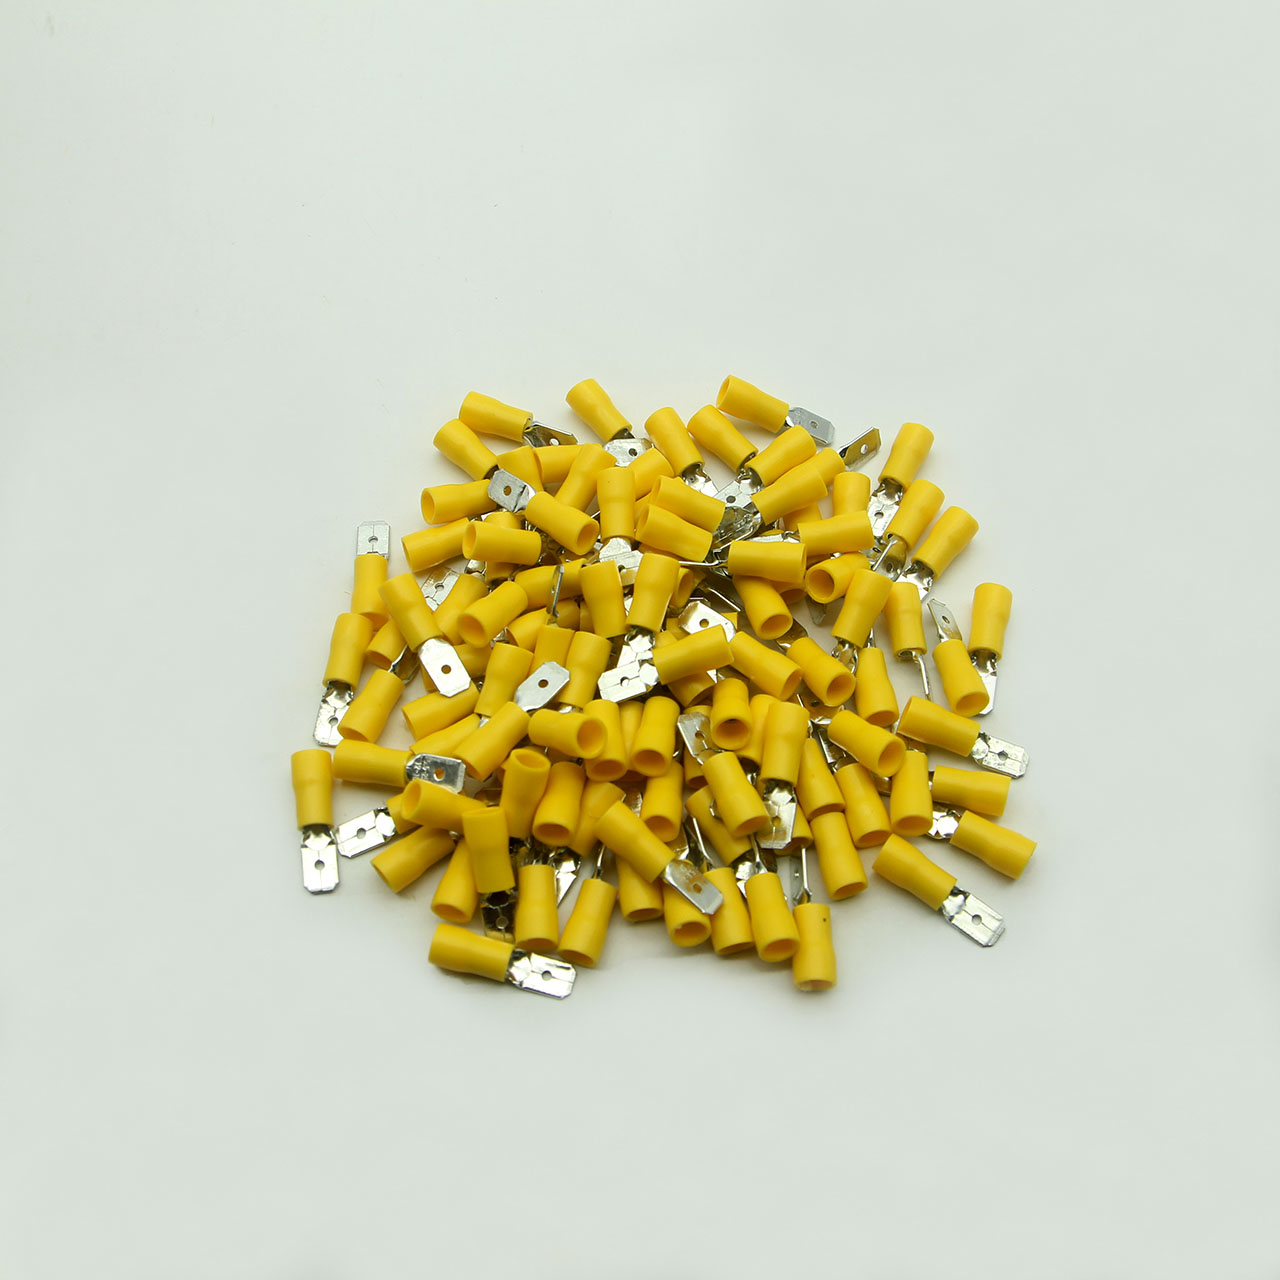 Túi 100 đầu cos ghim capa đực MDD 5.5-250 bọc nhựa vàng